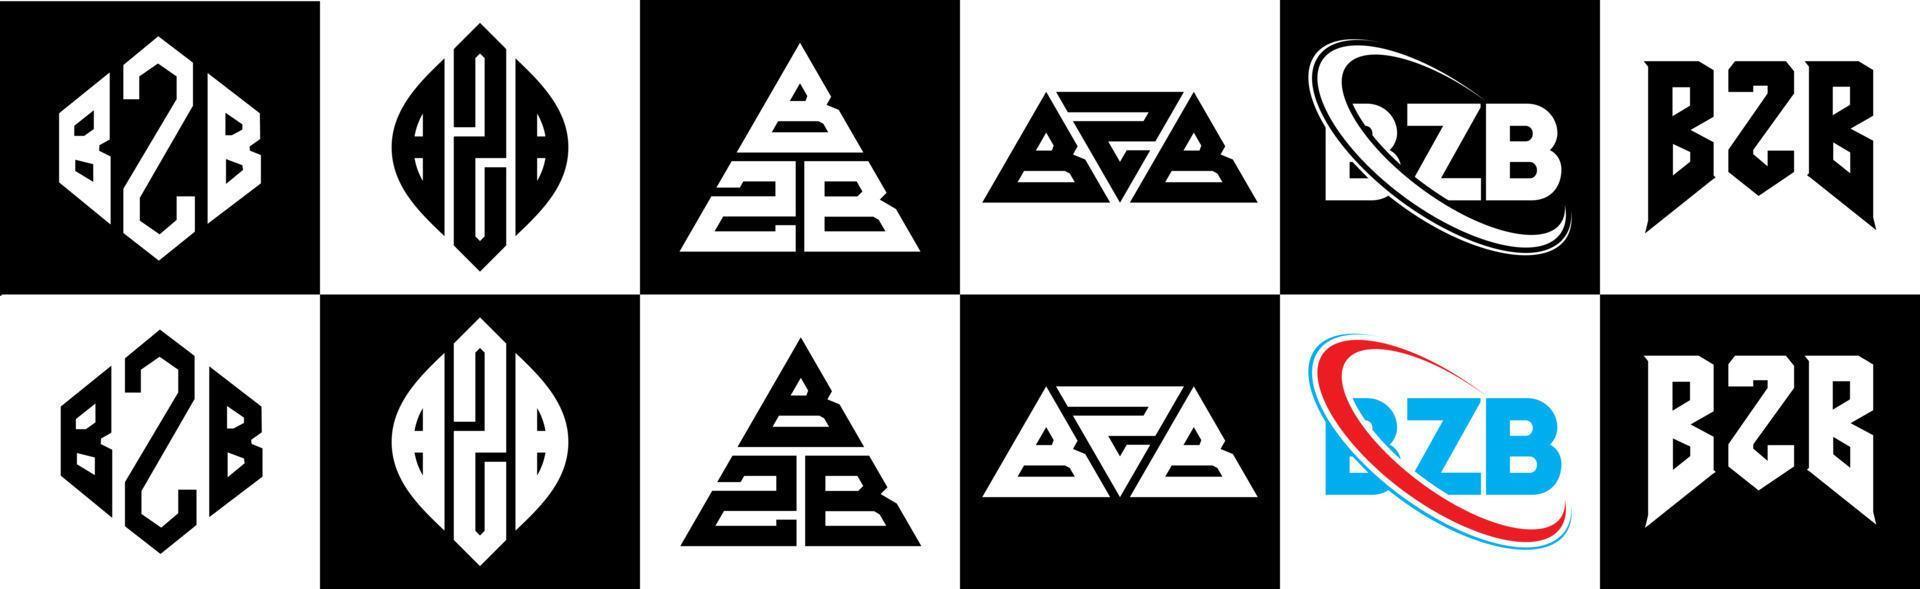 bzb-Buchstaben-Logo-Design in sechs Stilen. bzb polygon, kreis, dreieck, hexagon, flacher und einfacher stil mit schwarz-weißem farbvariationsbuchstabenlogo in einer zeichenfläche. bzb minimalistisches und klassisches Logo vektor